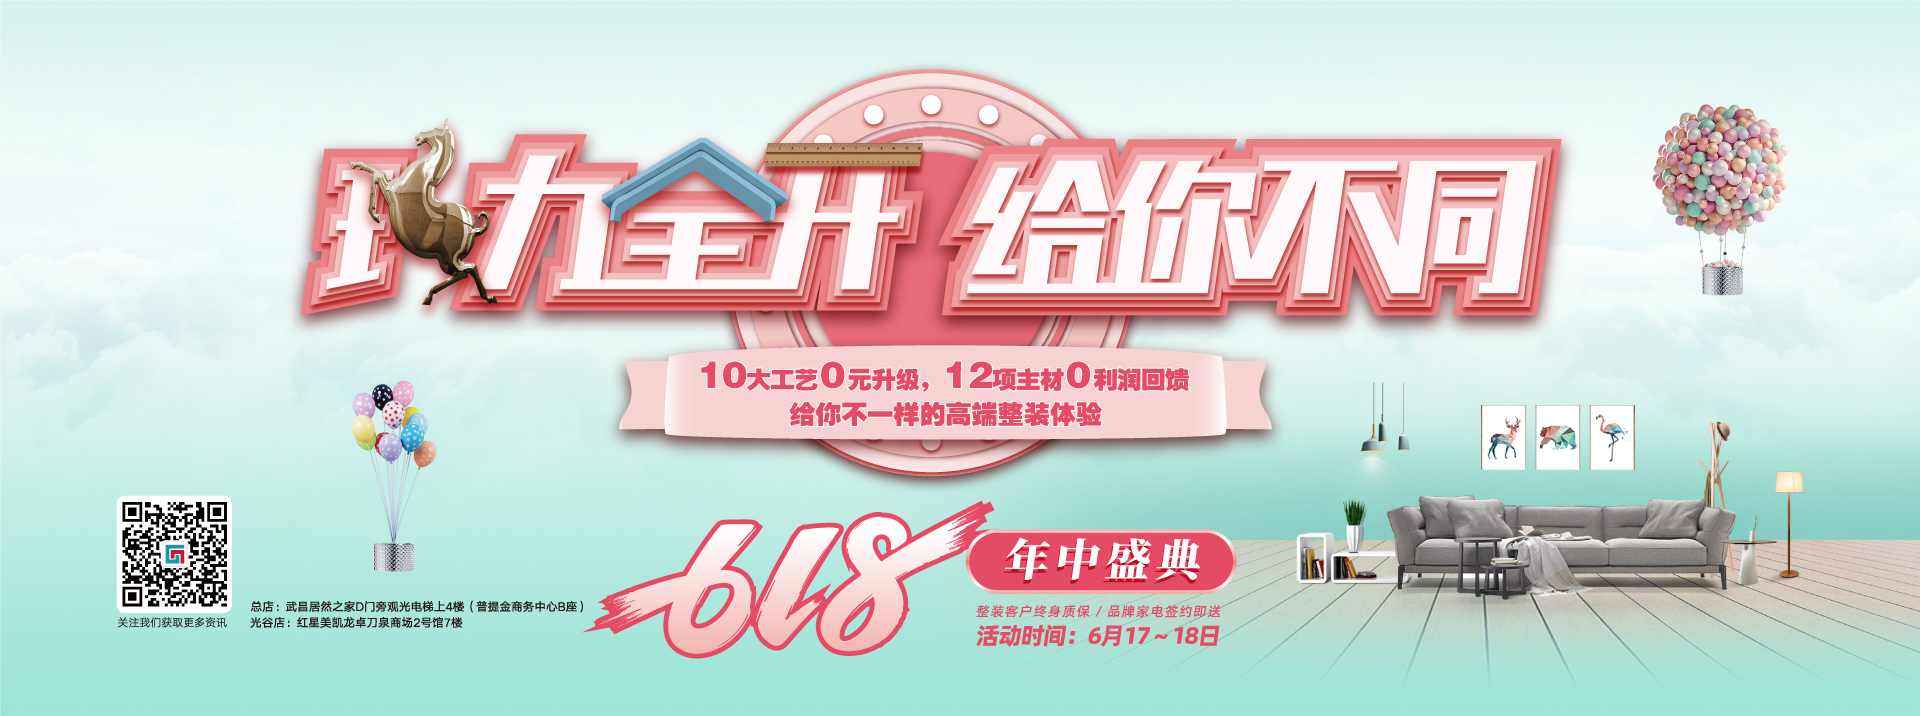 中国女人内射6XXXXX六西格玛装饰活动海报